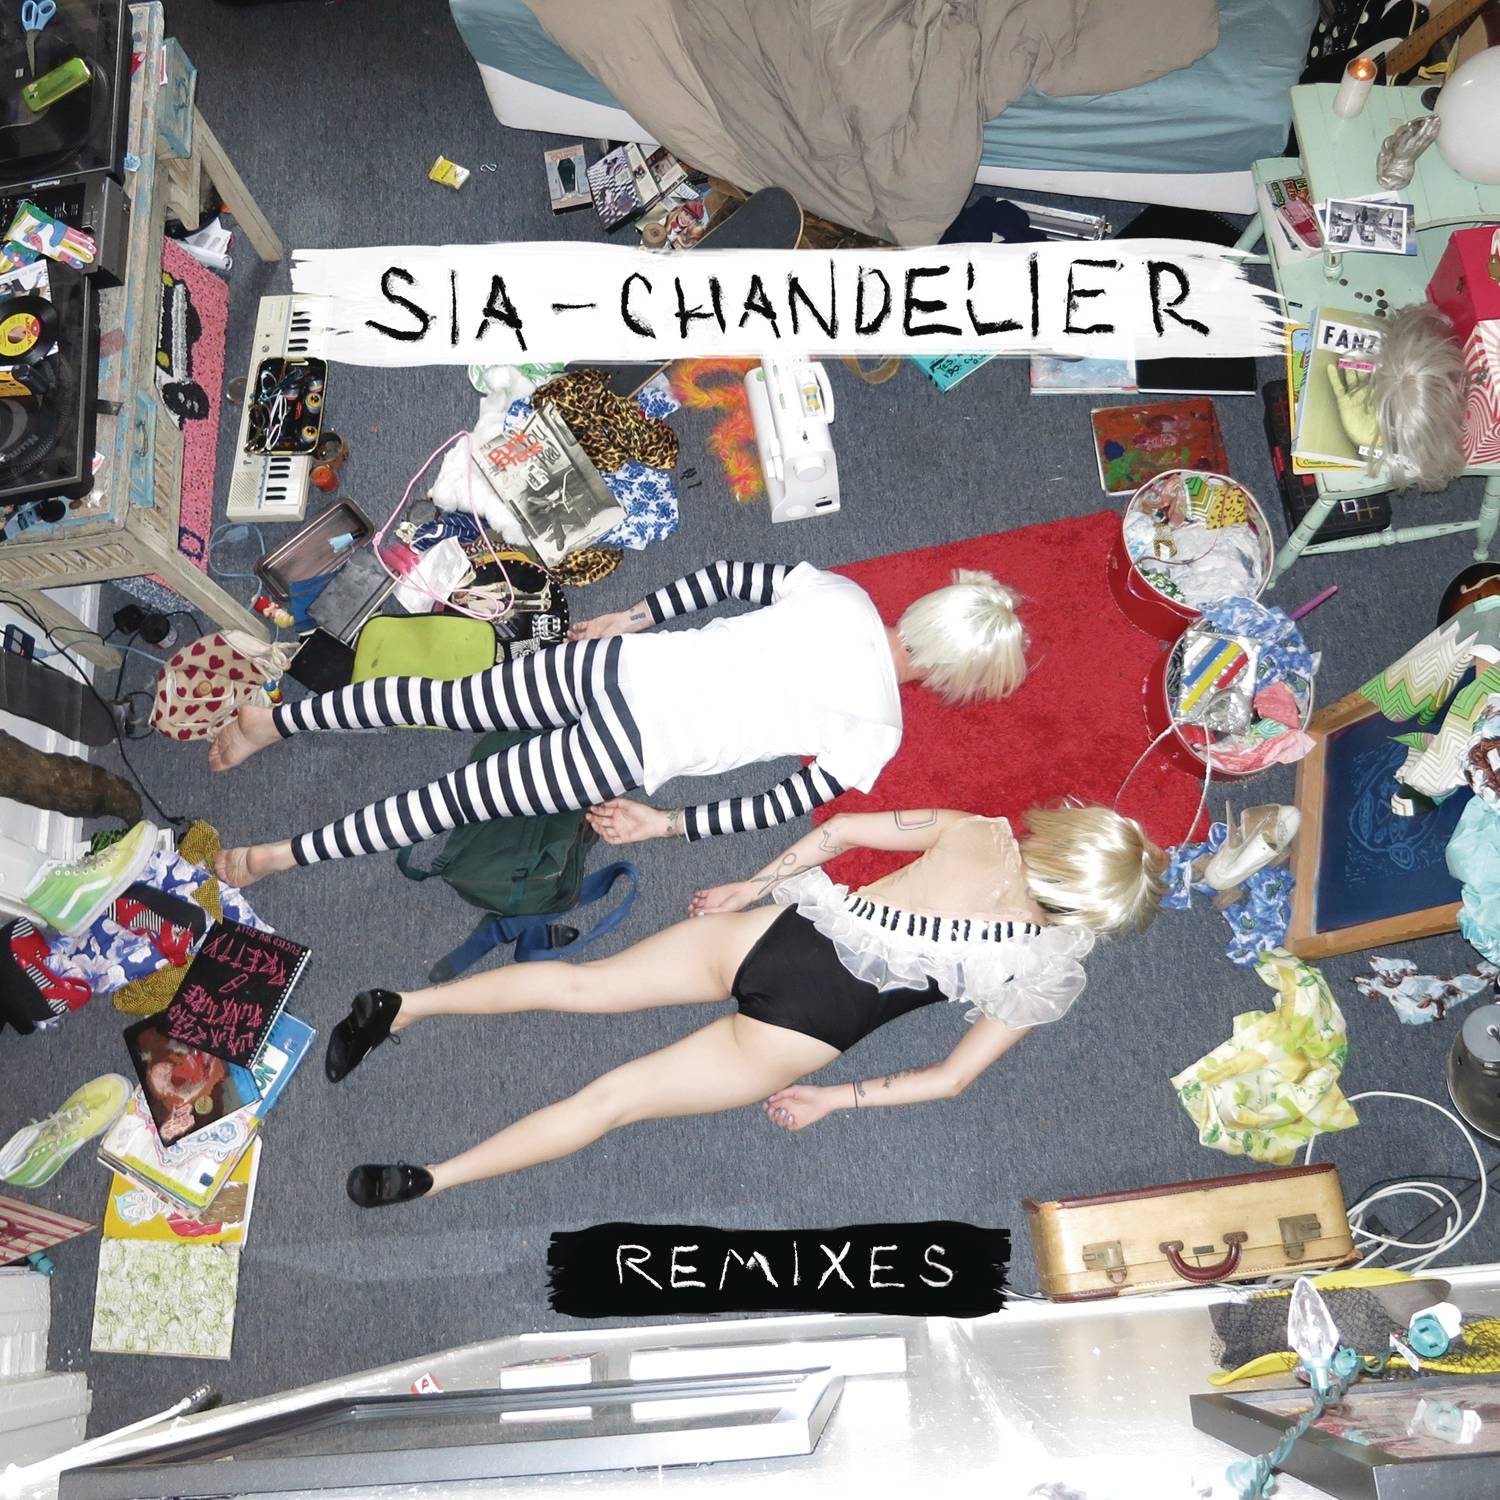 Chandelier (Dev Hynes Remix)